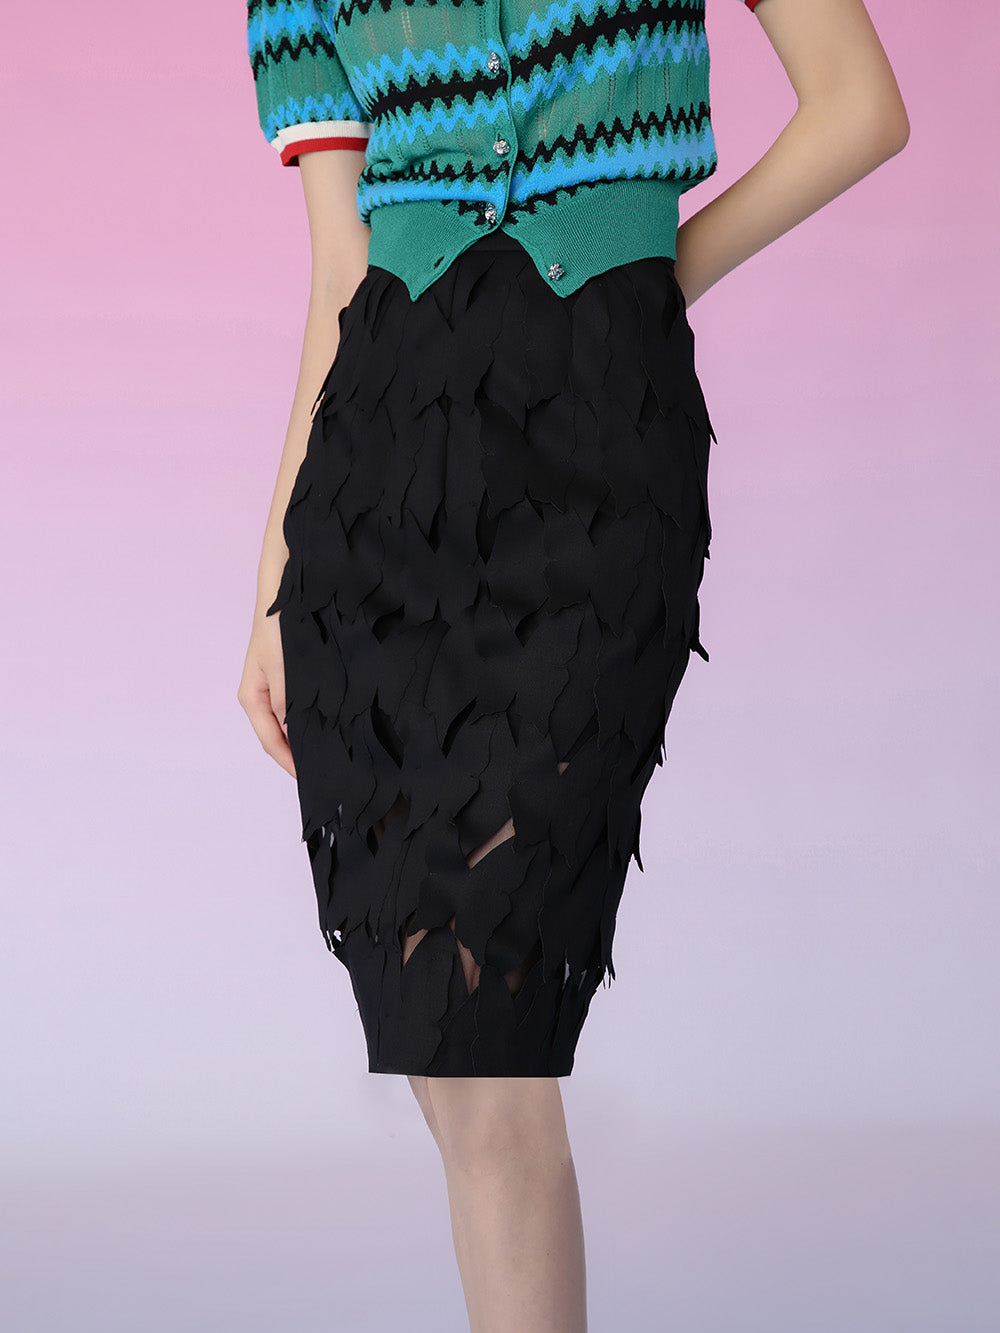 MUKZIN Butterfly Cutout Black Skirt